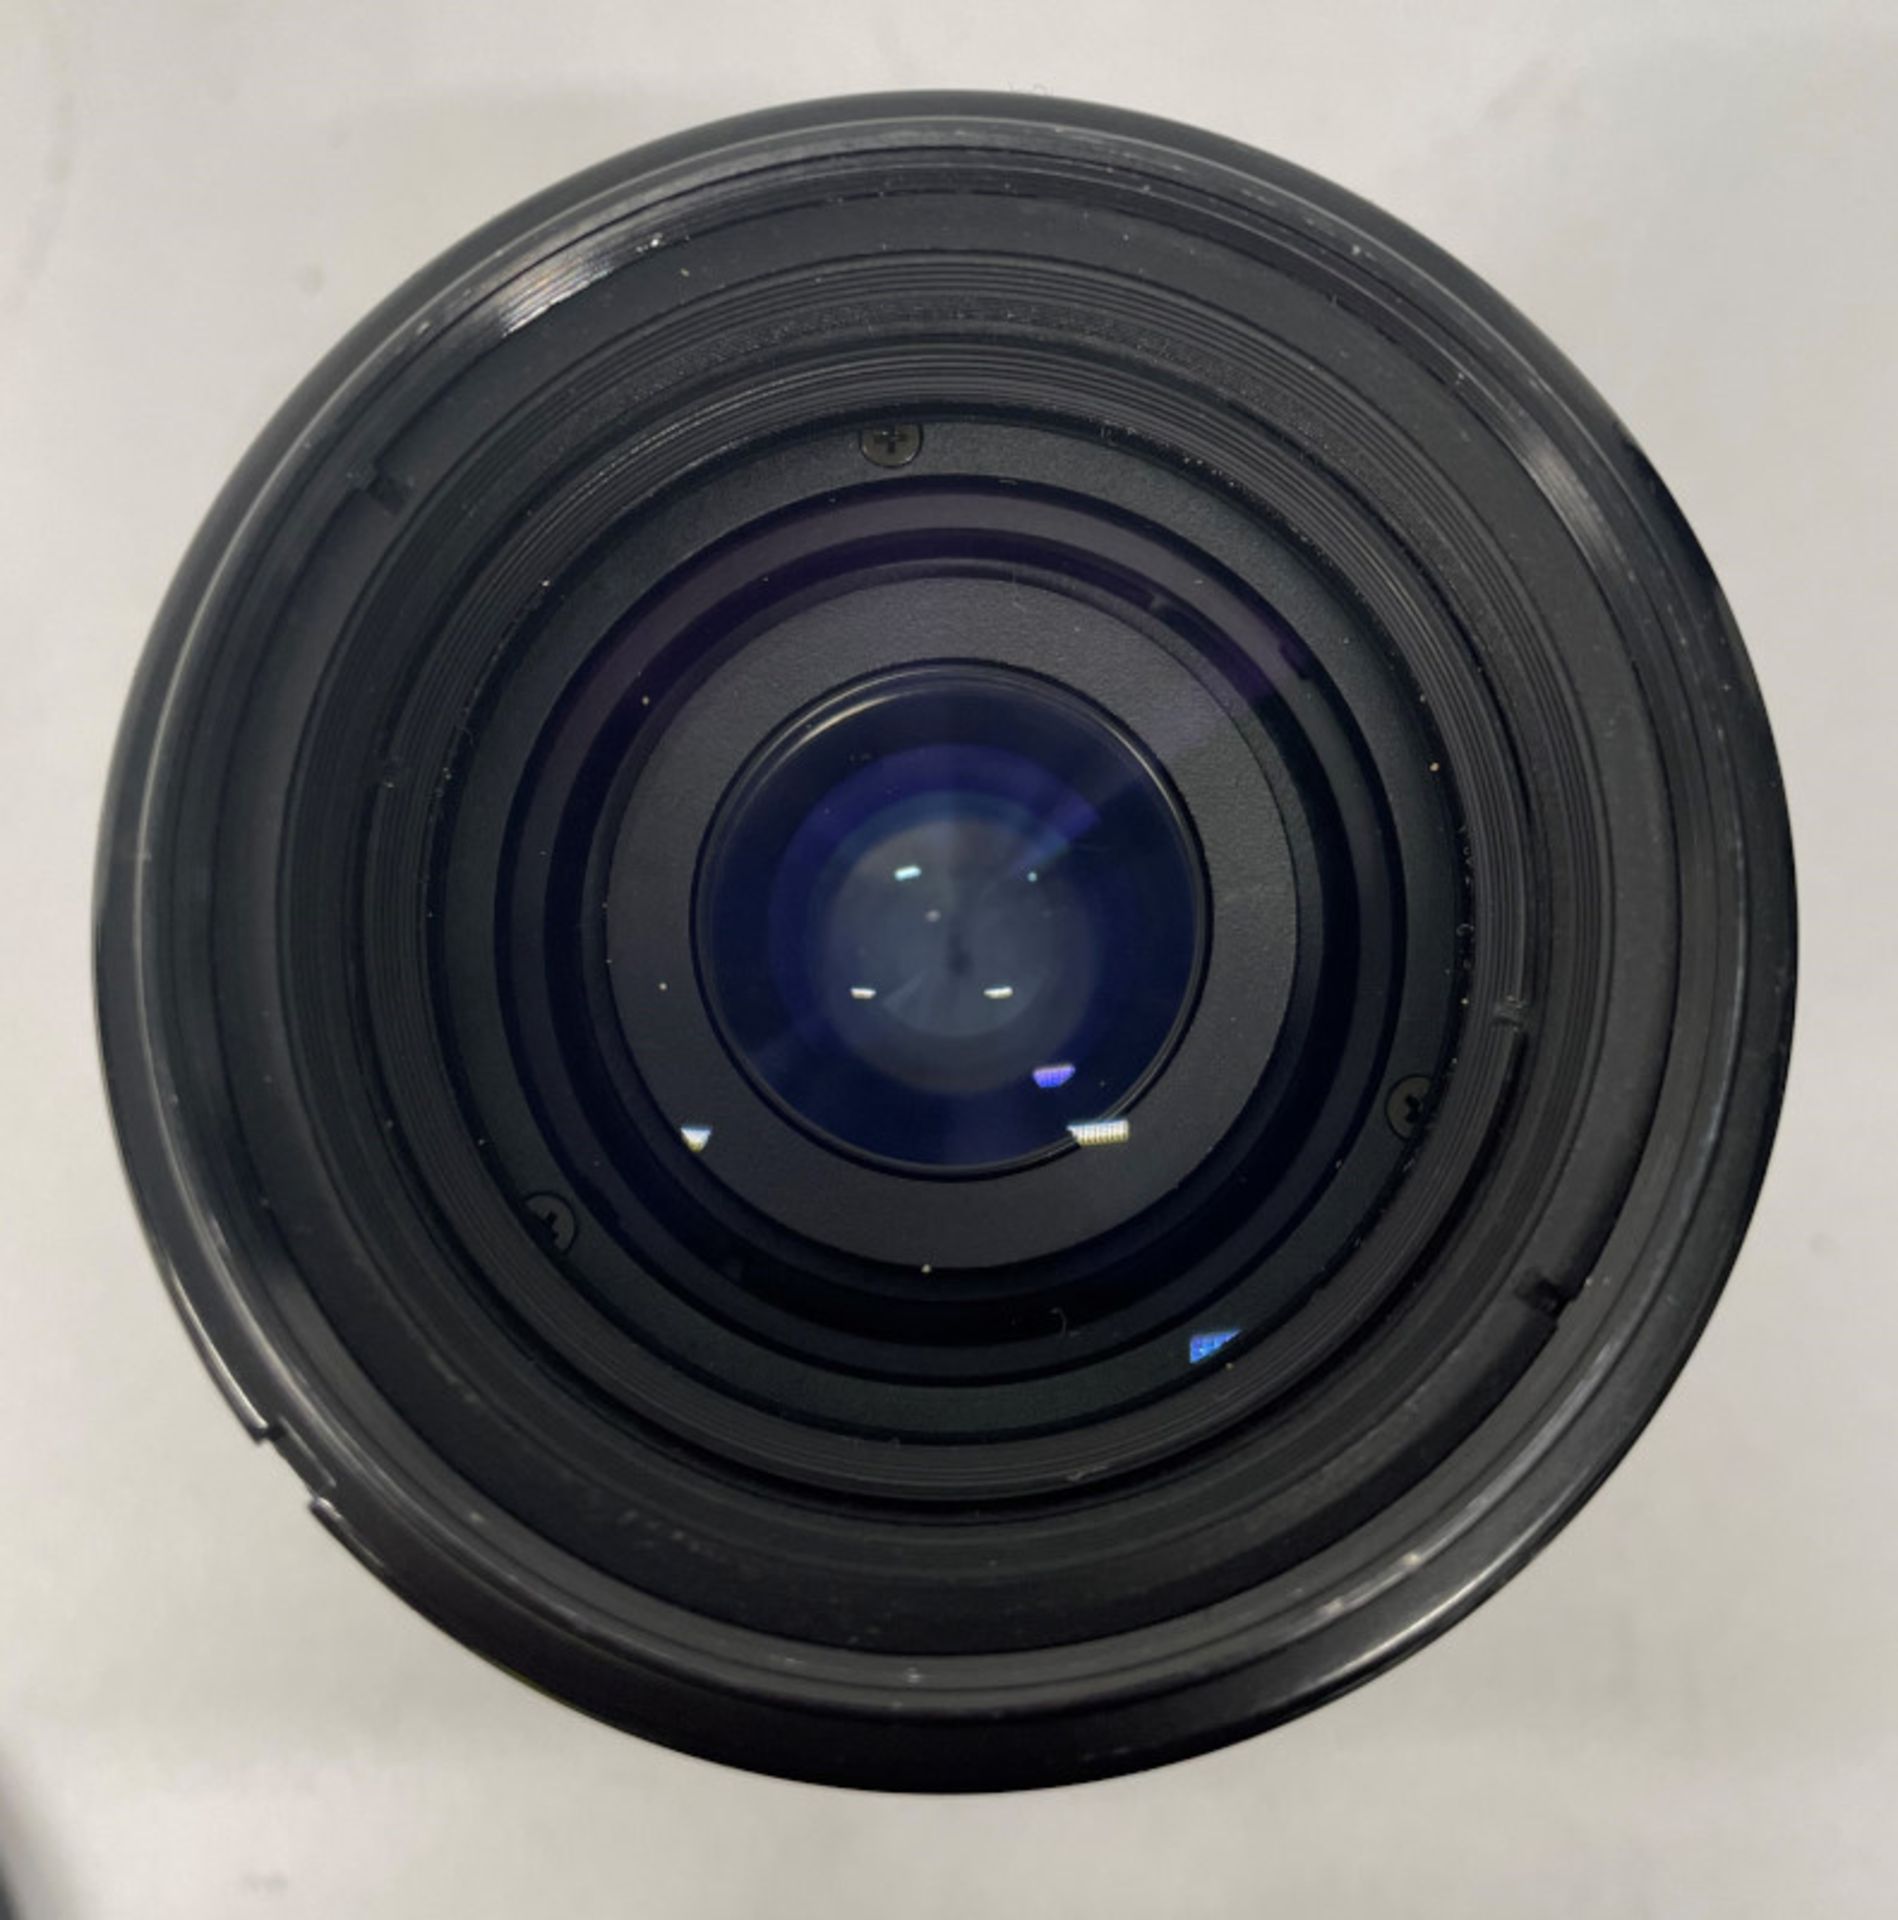 Nikon AF Nikkor 70-210mm - 1:4-5.6 Lens - Serial No. 2569314 with Kenko PRO1D UV(W) 62mm Filter - Image 3 of 5